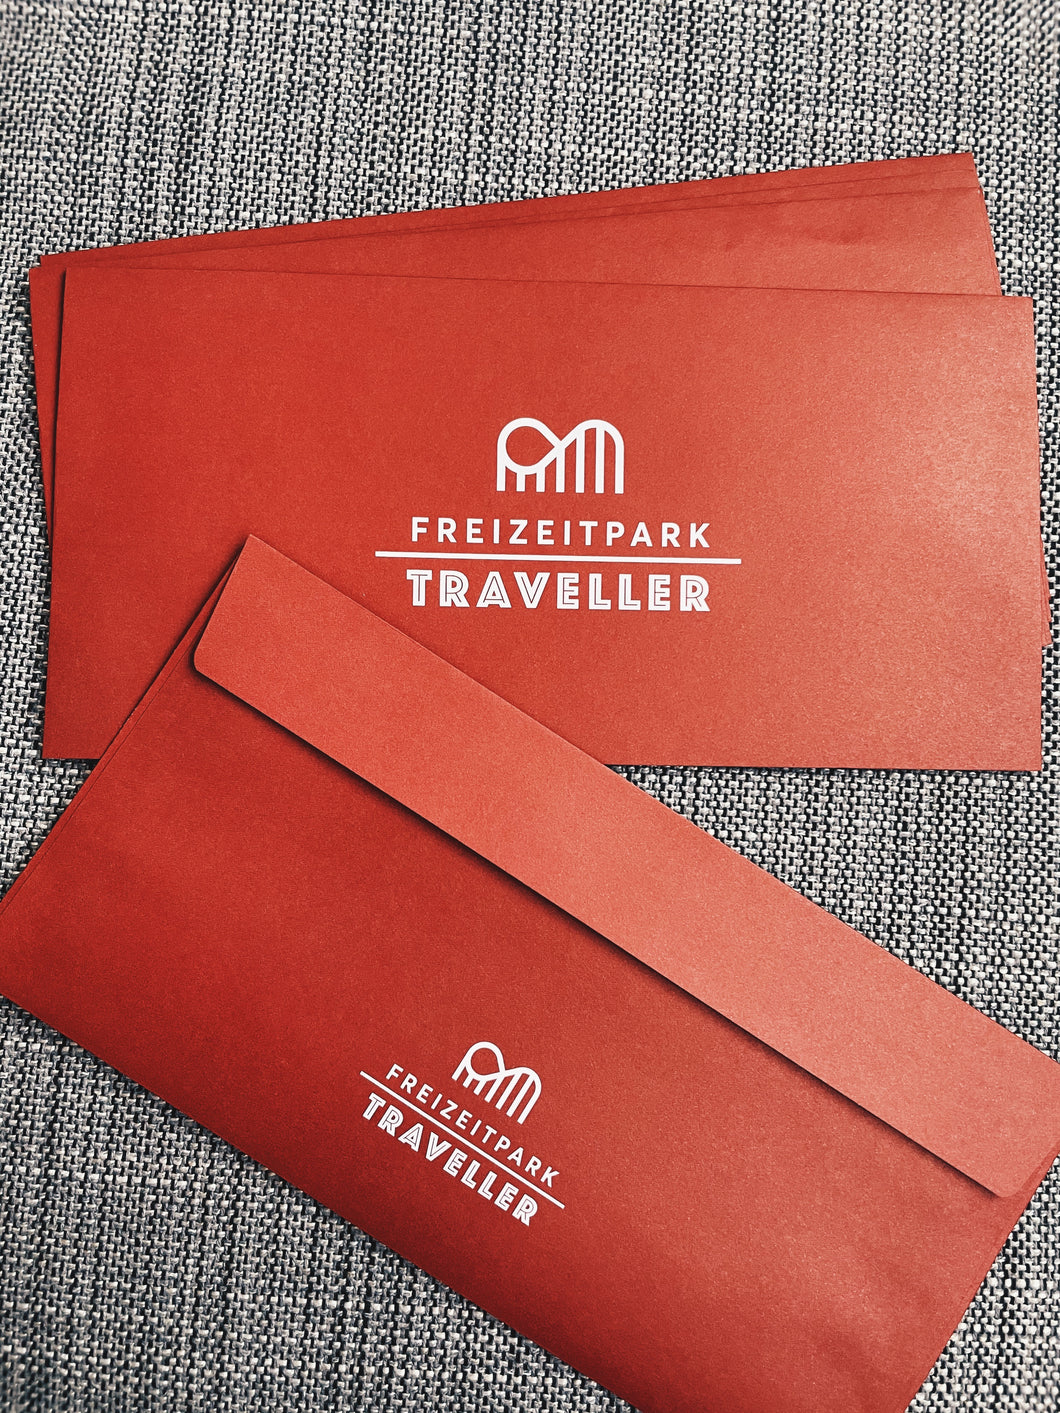 Freizeitpark Traveller Briefumschlag Red